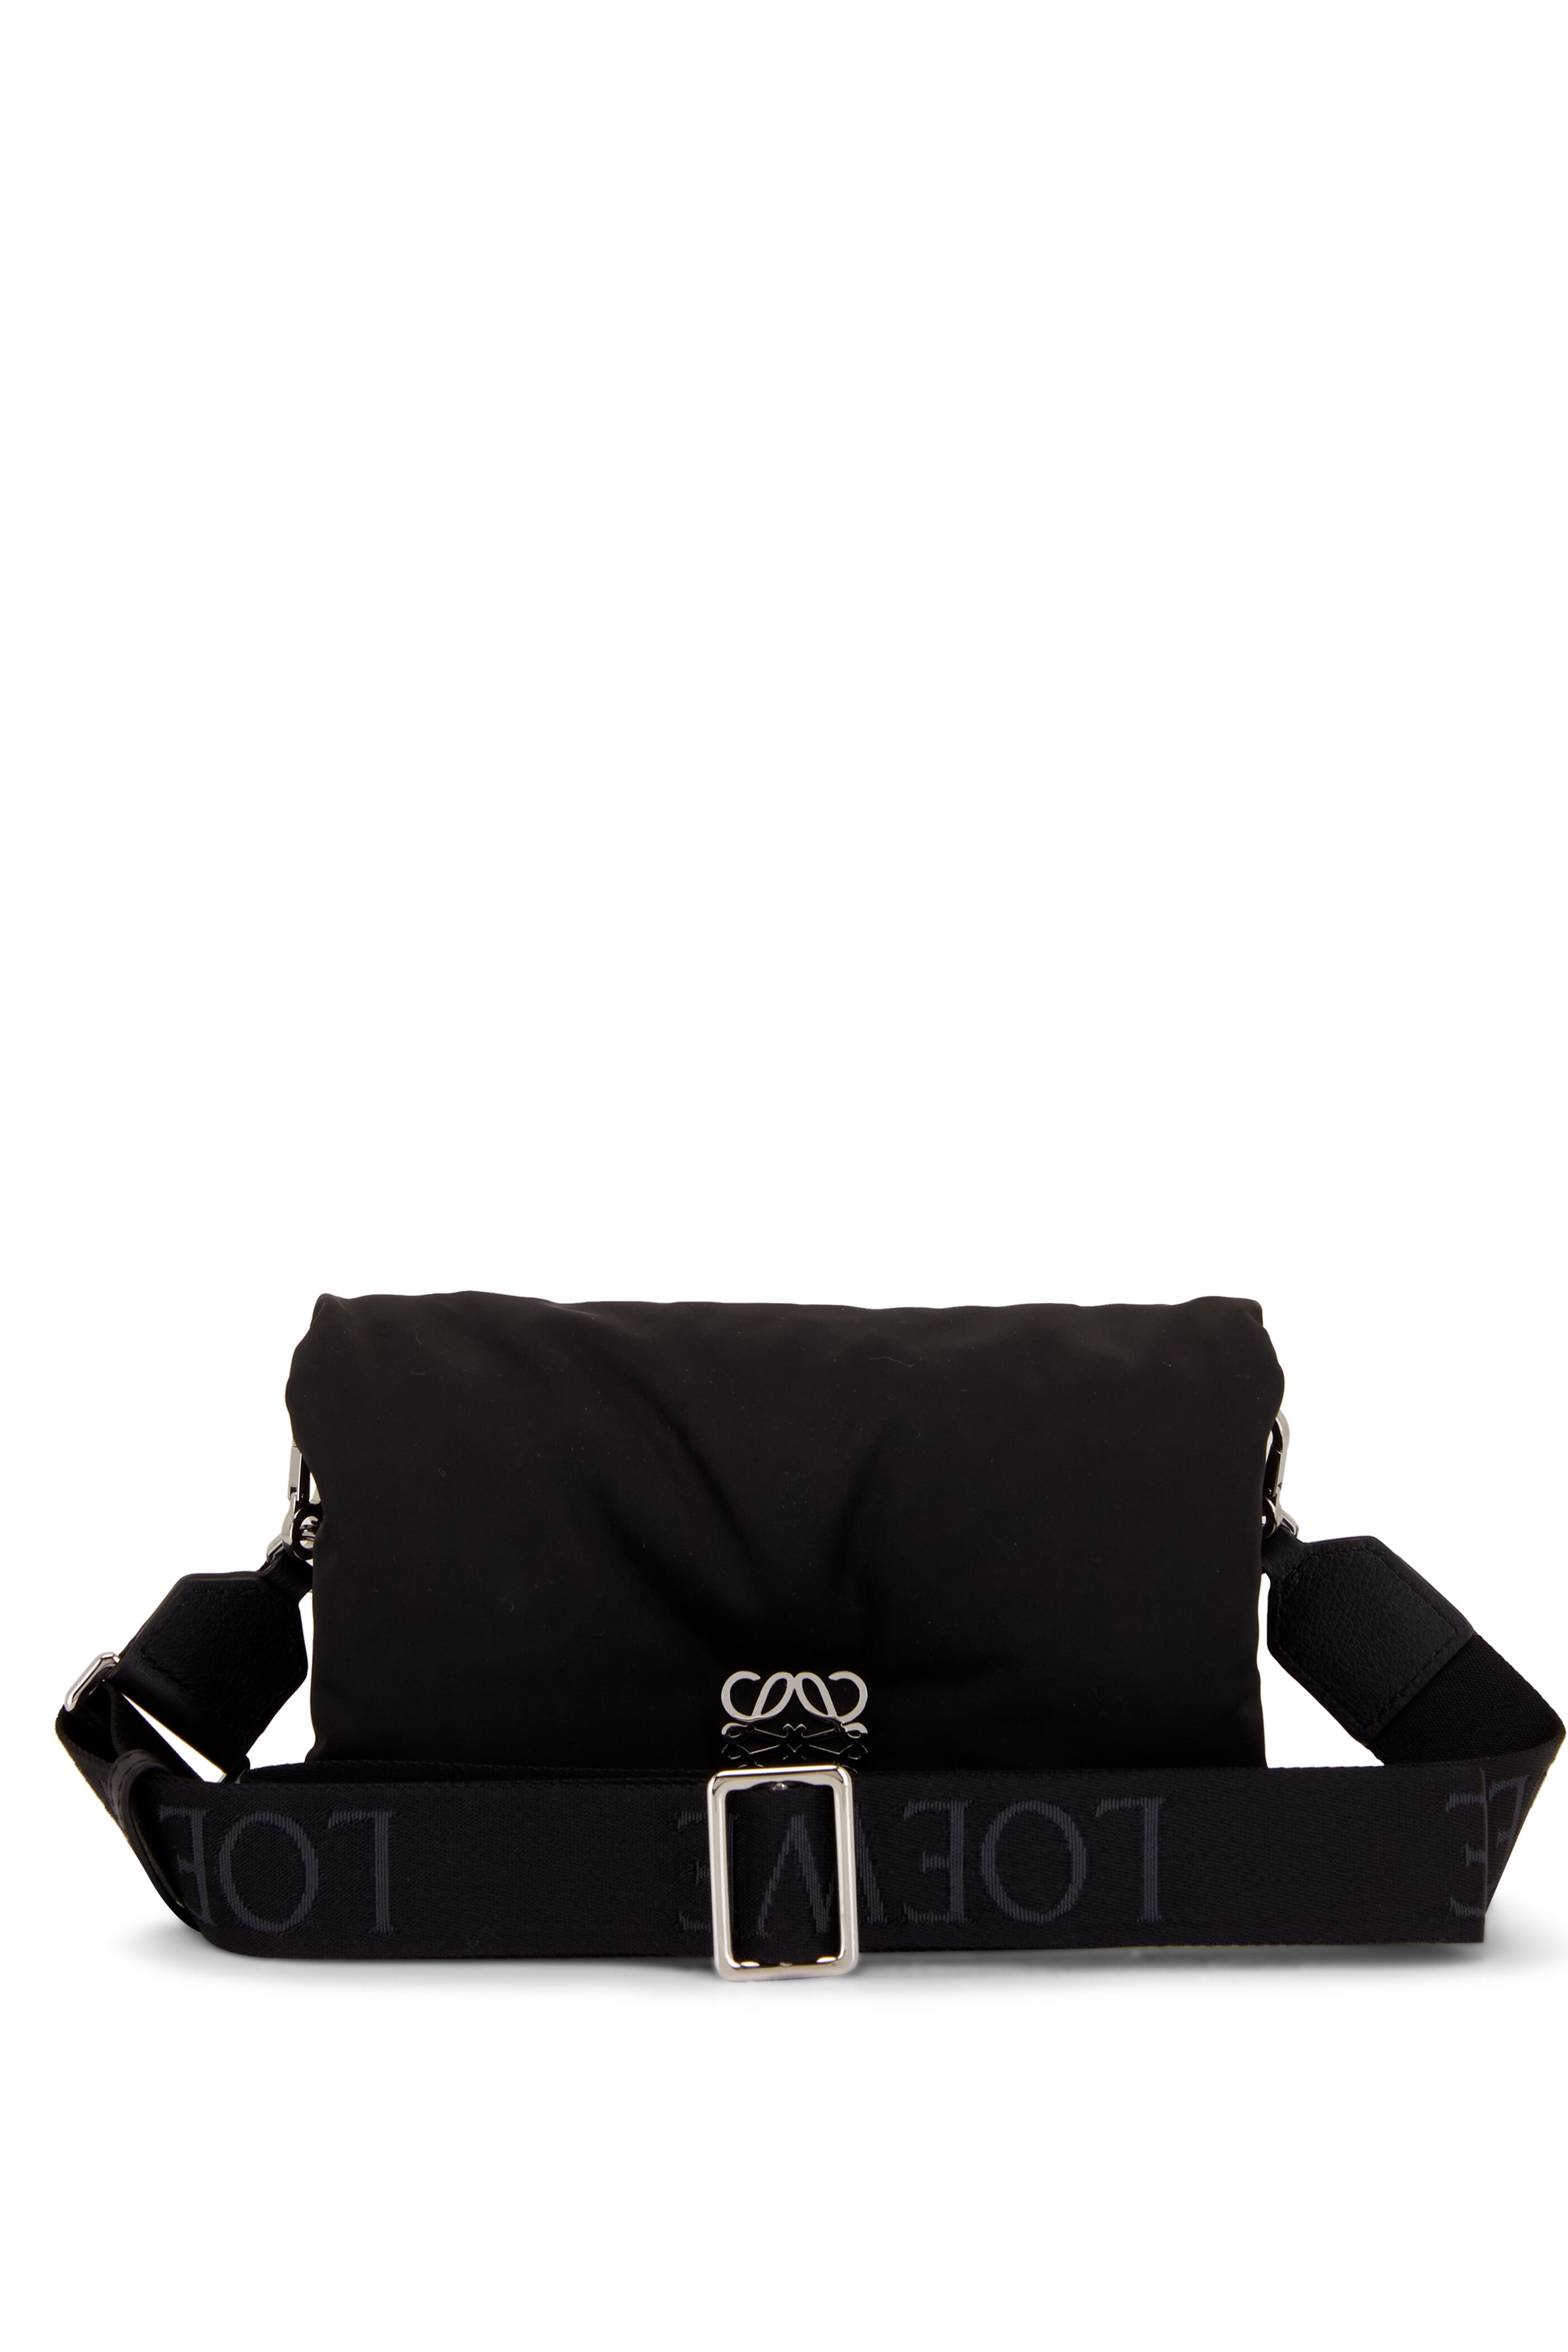 Loewe Goya Puffer Mini Bag in Black